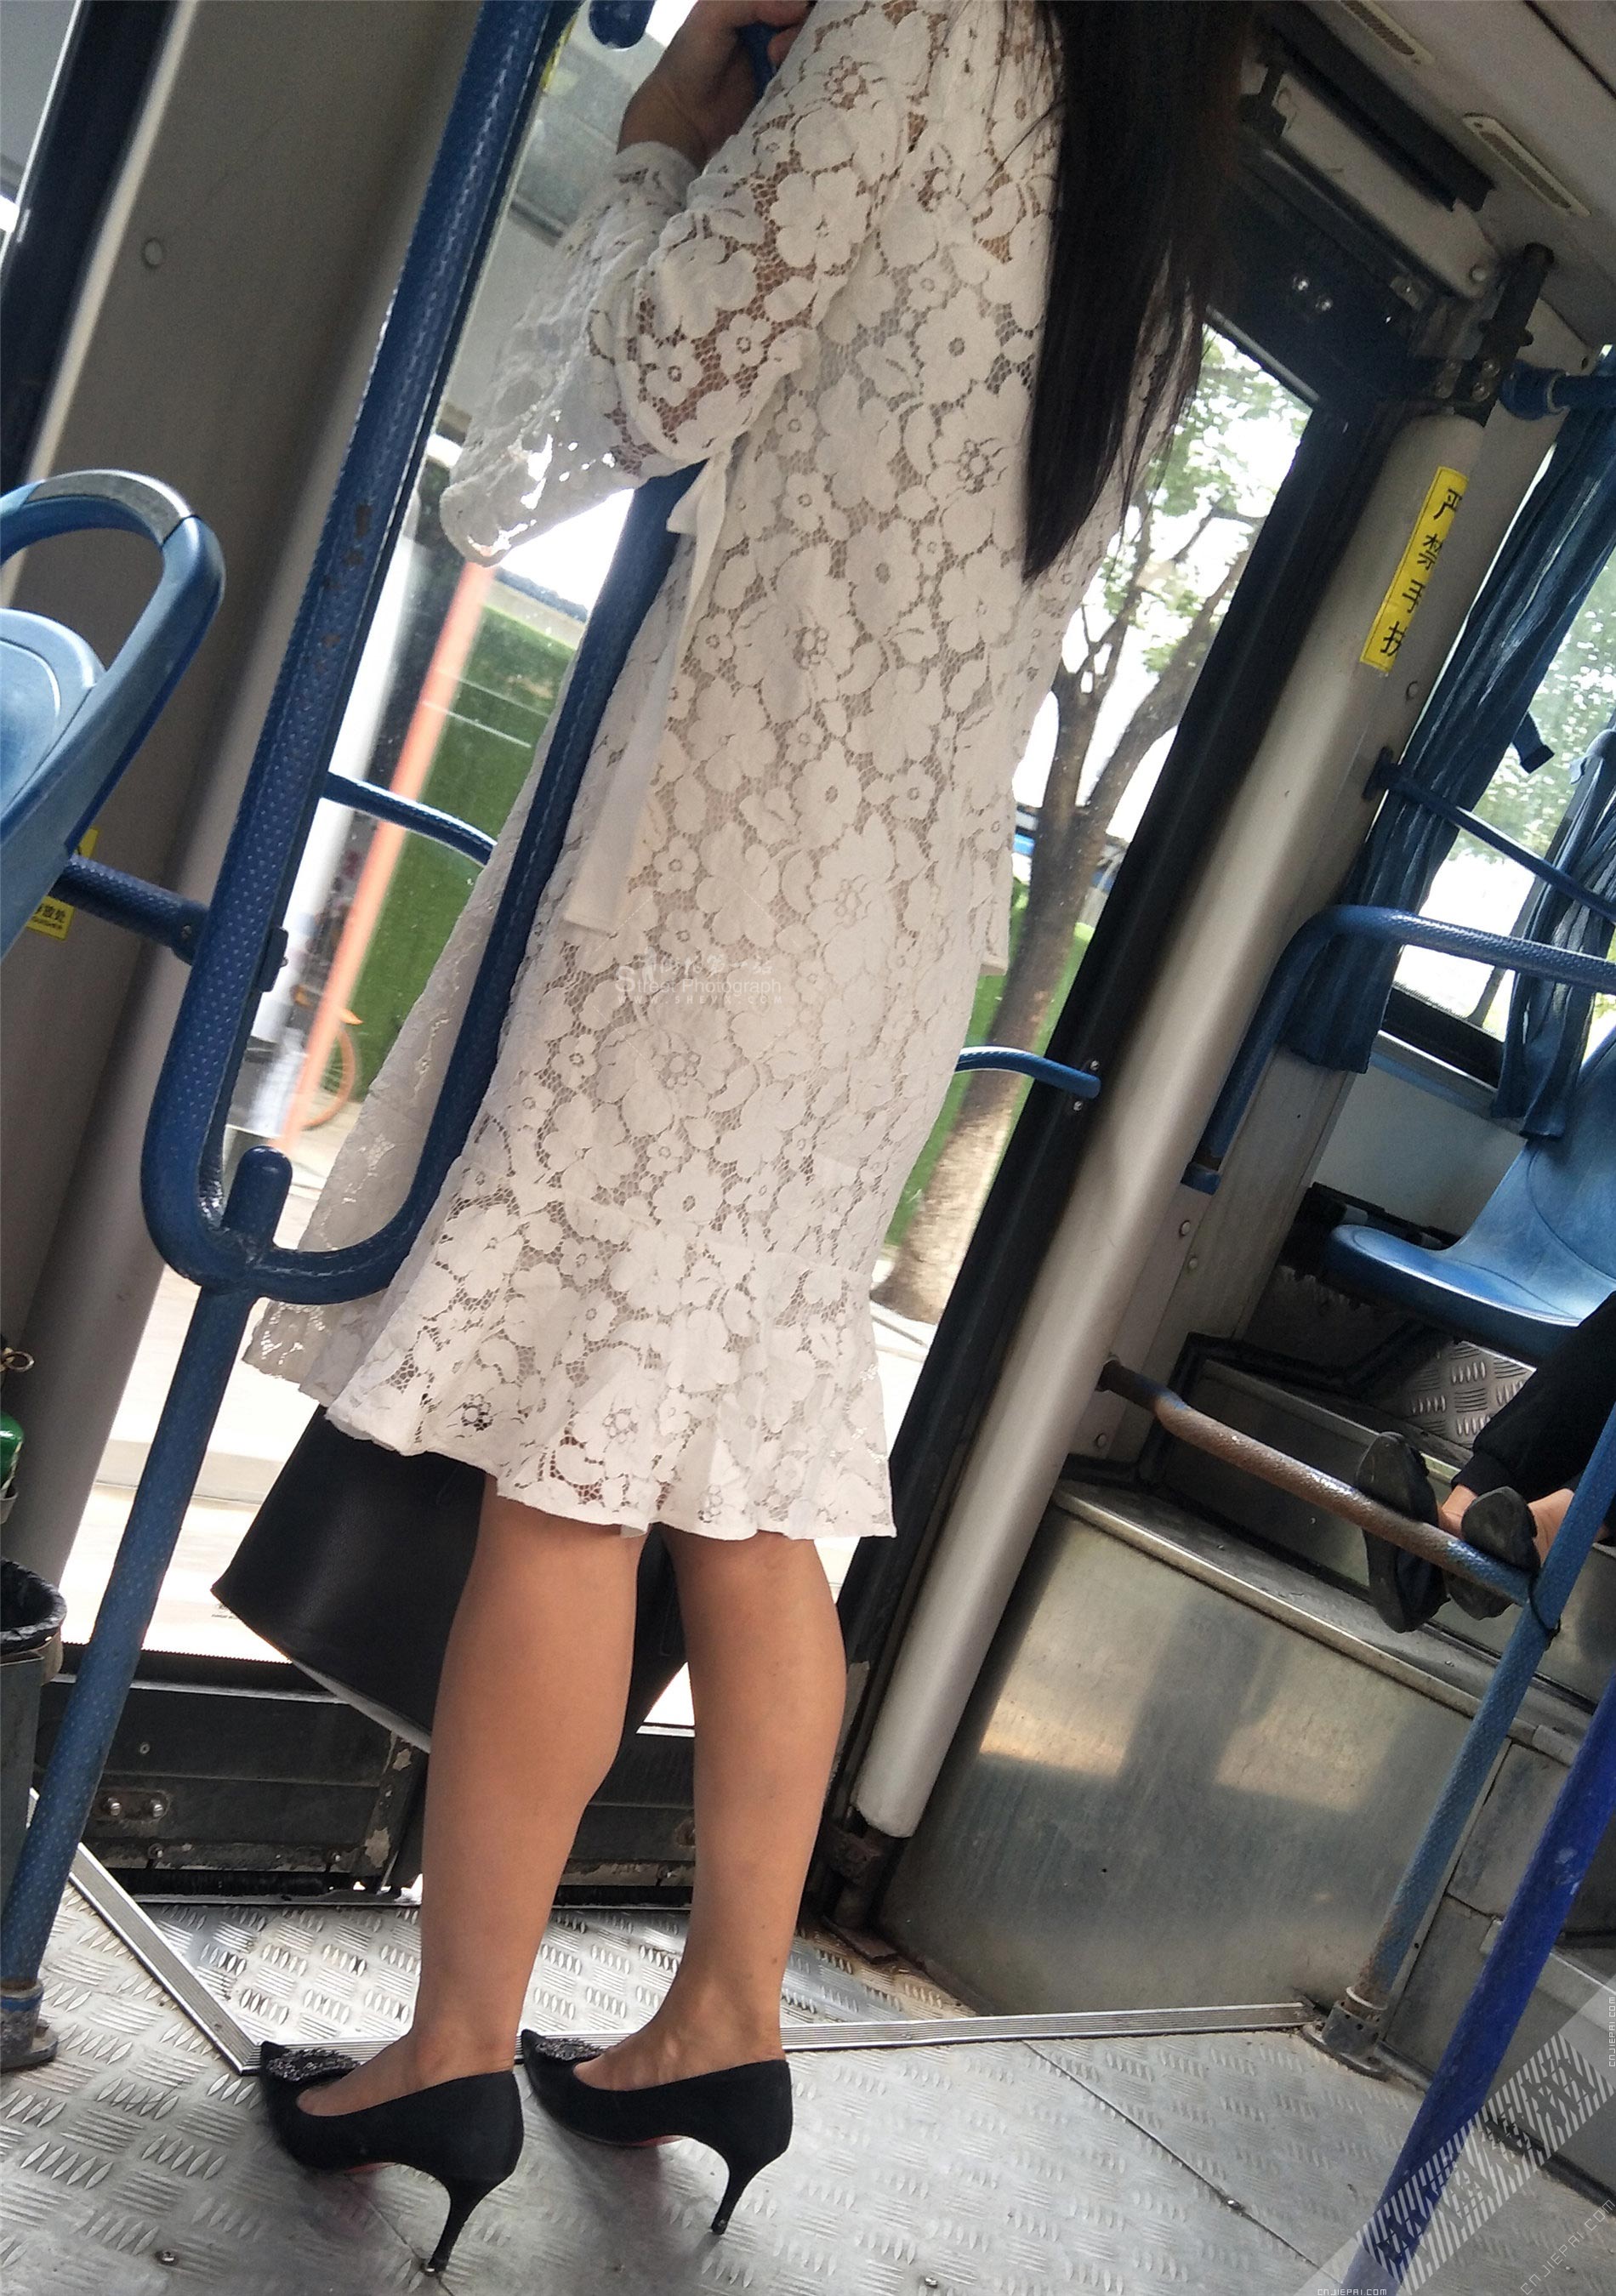 公交车蕾丝连衣裙长发高跟美少妇 图1